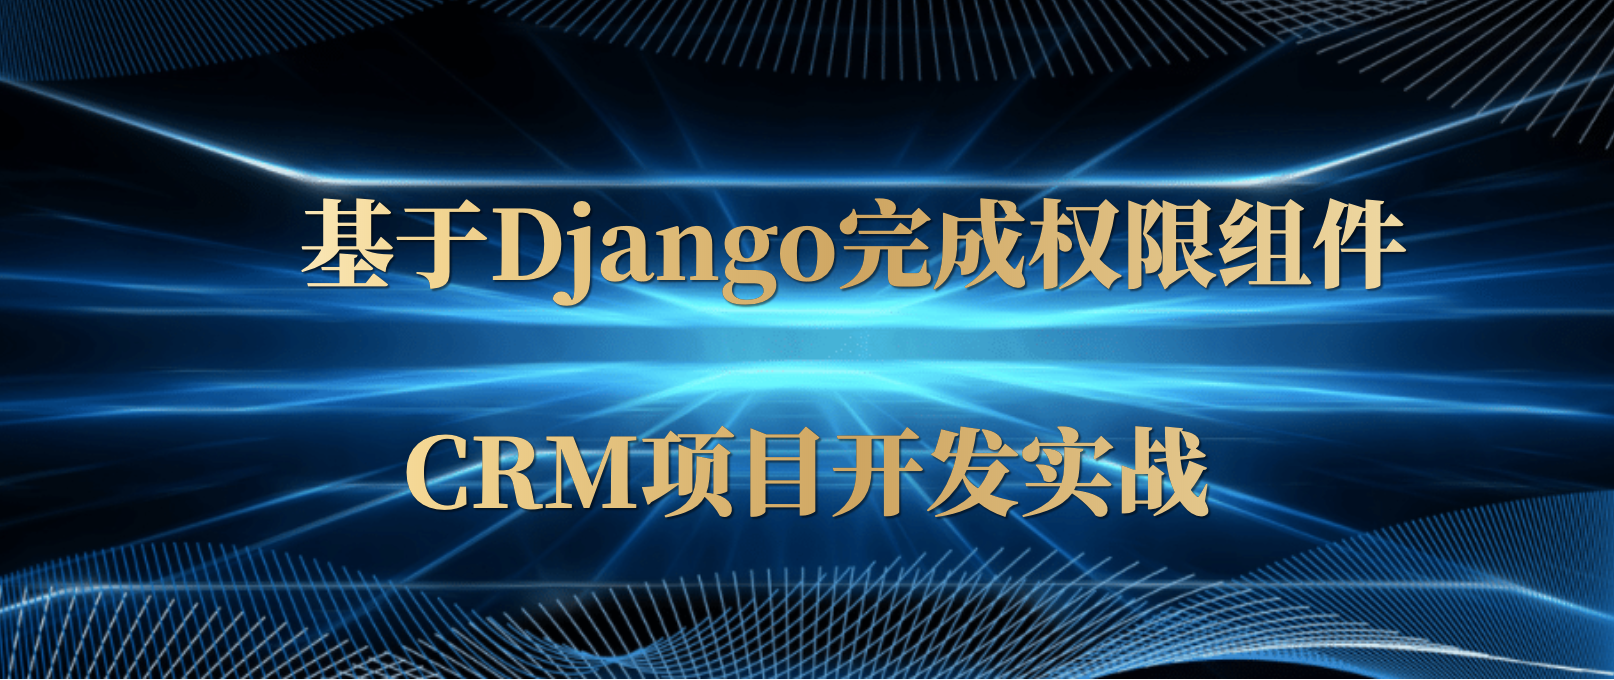 基于Django完成权限组件以及CRM项目开发实战